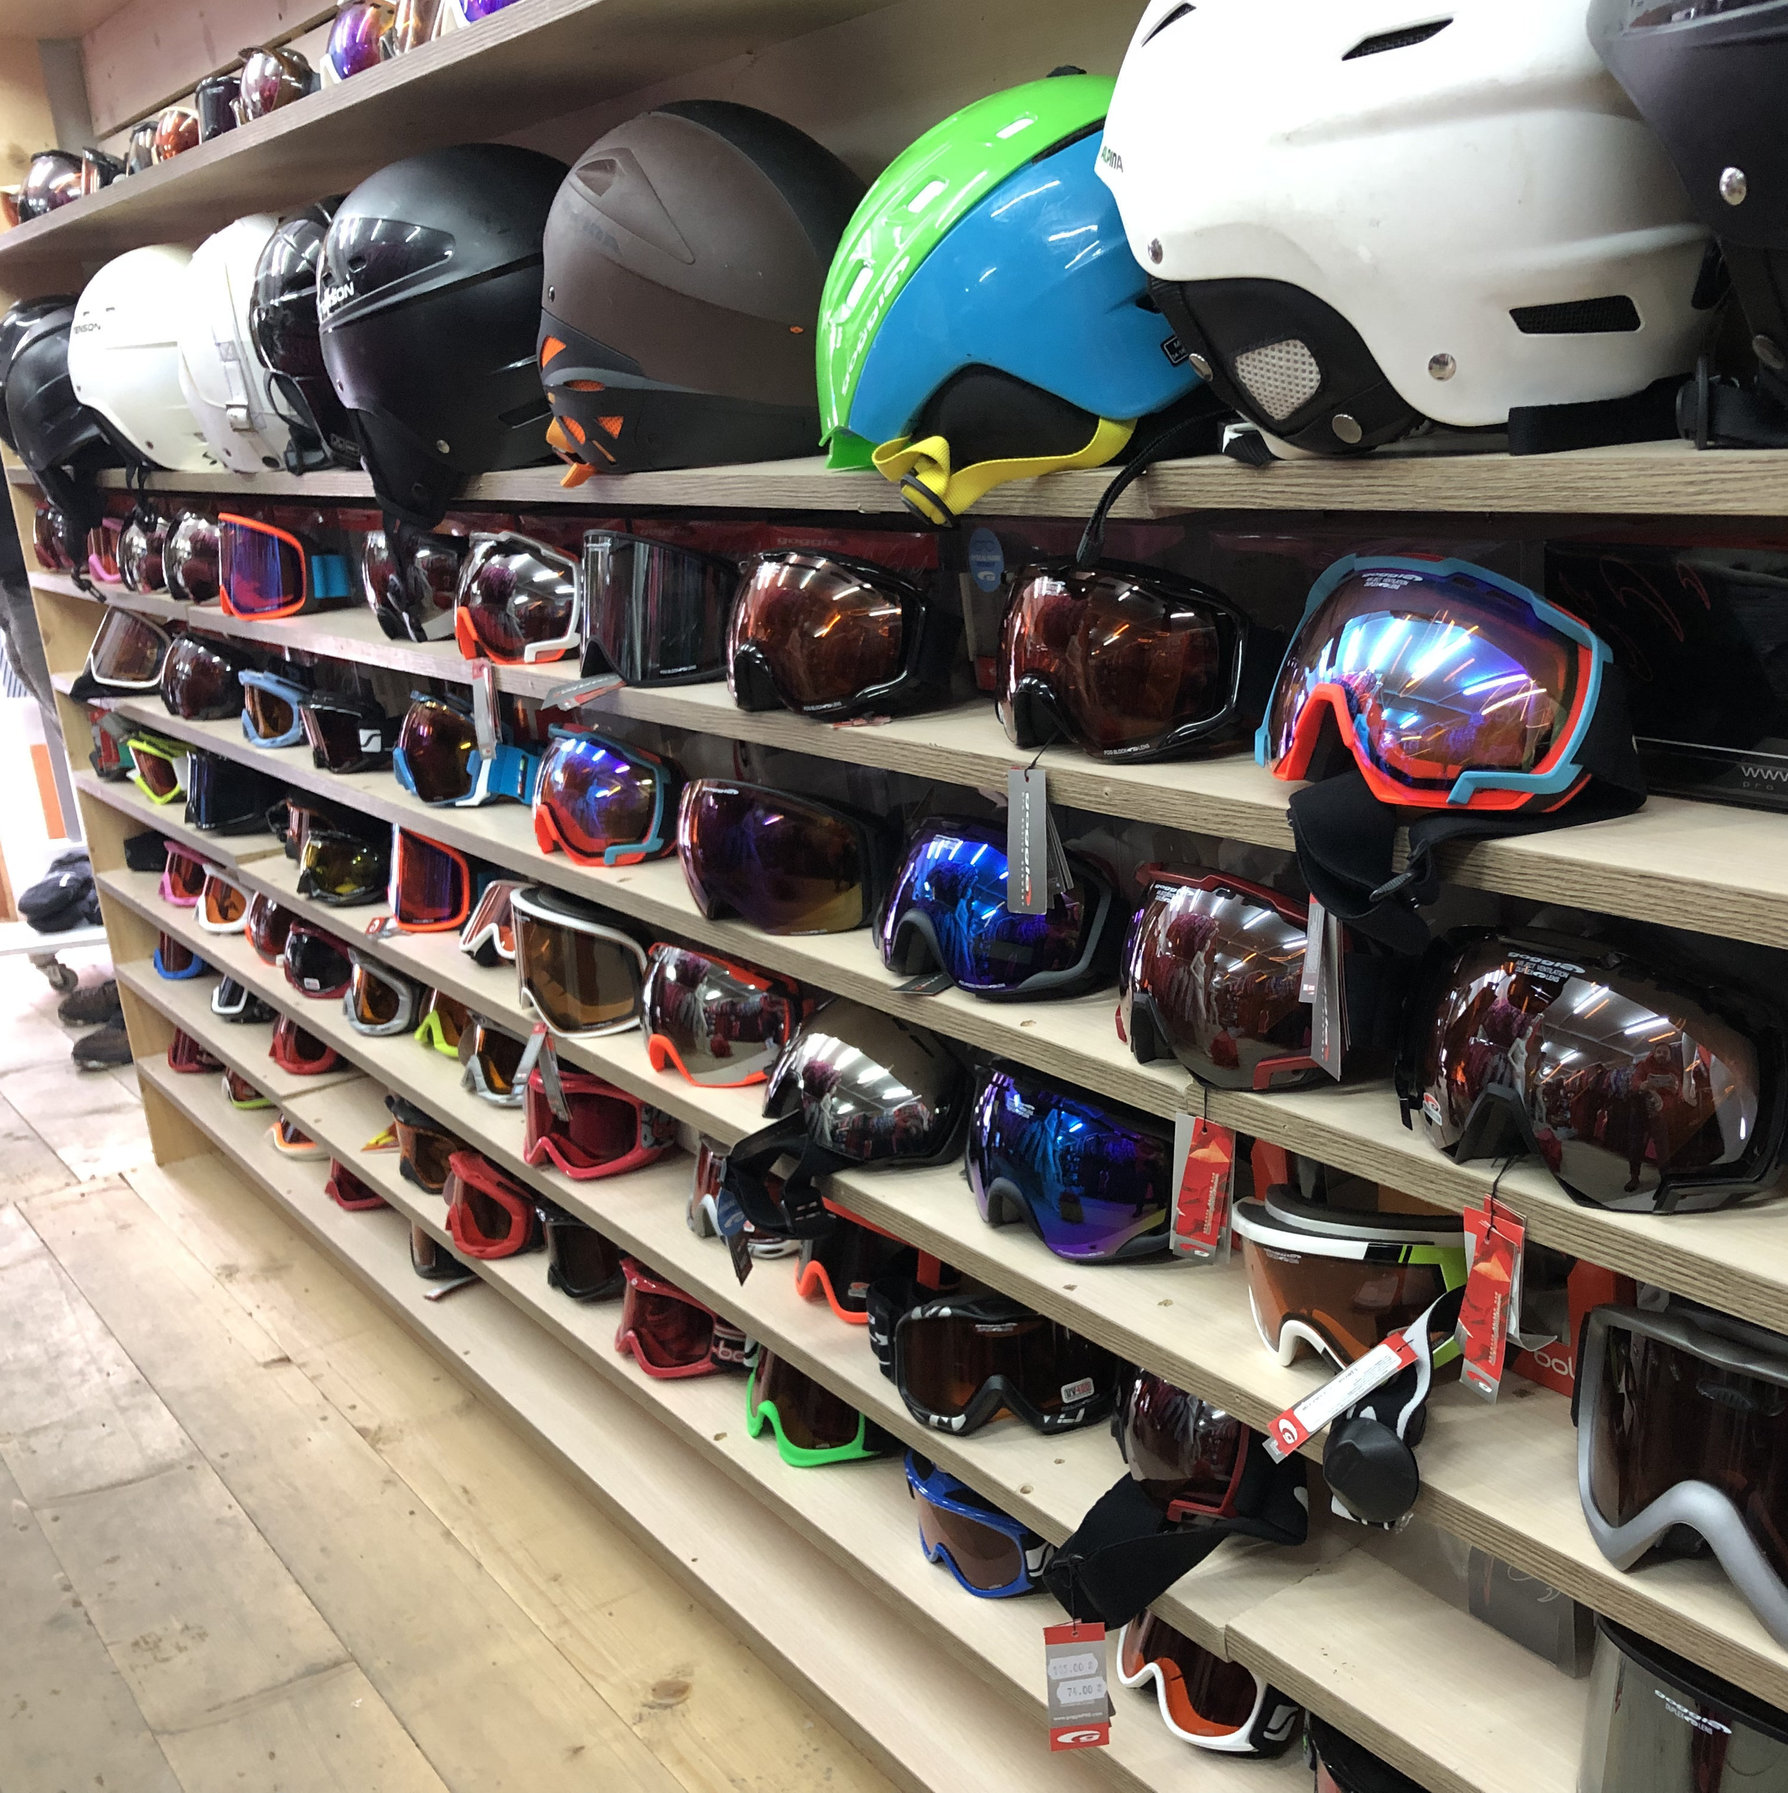 שפע חנויות להשכרת ציוד סקי בזול